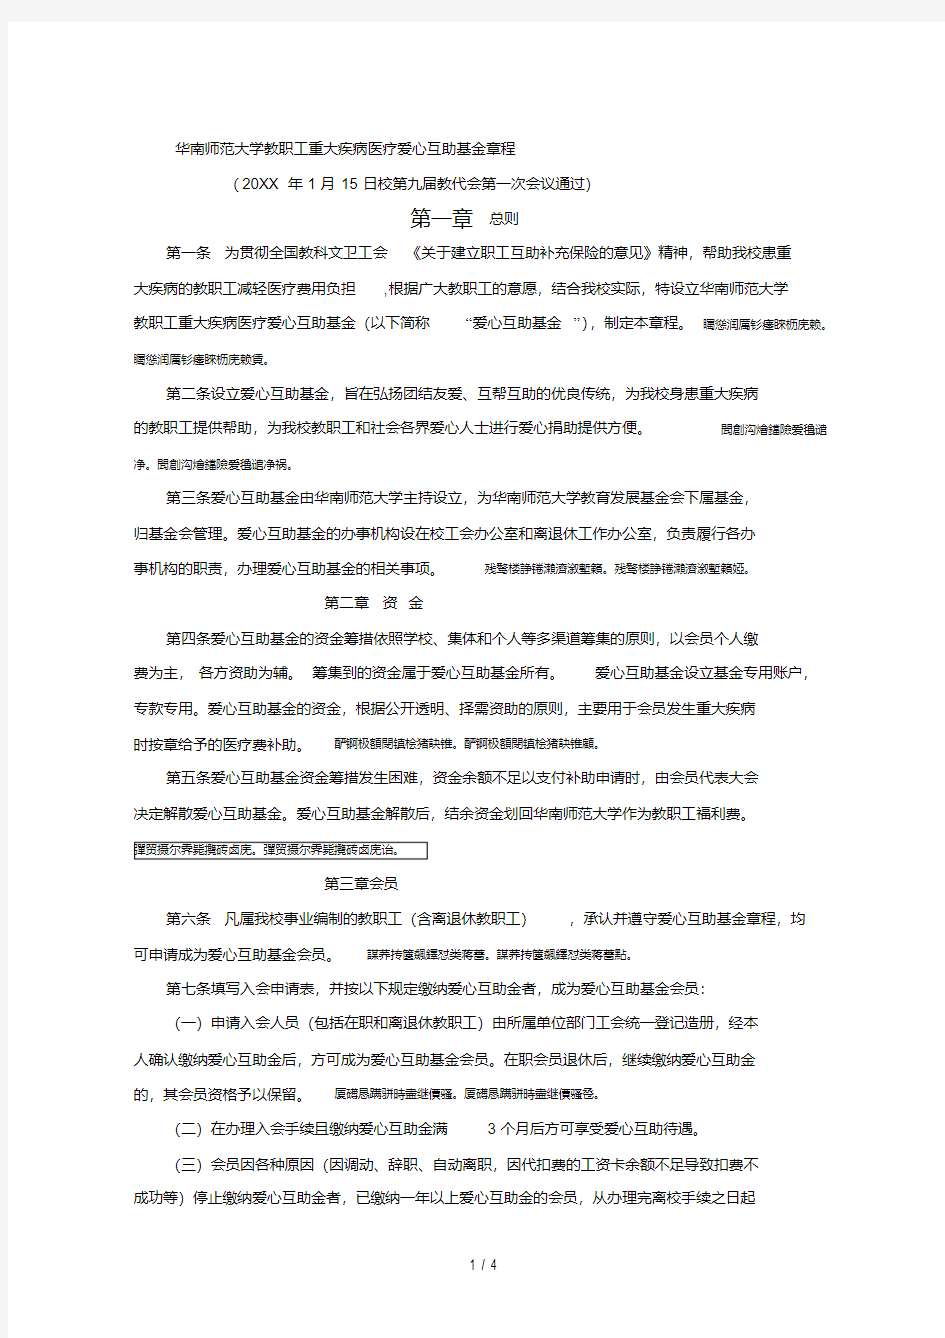 华南师范大学教职工重大疾病医疗爱心互助基金章程.pdf